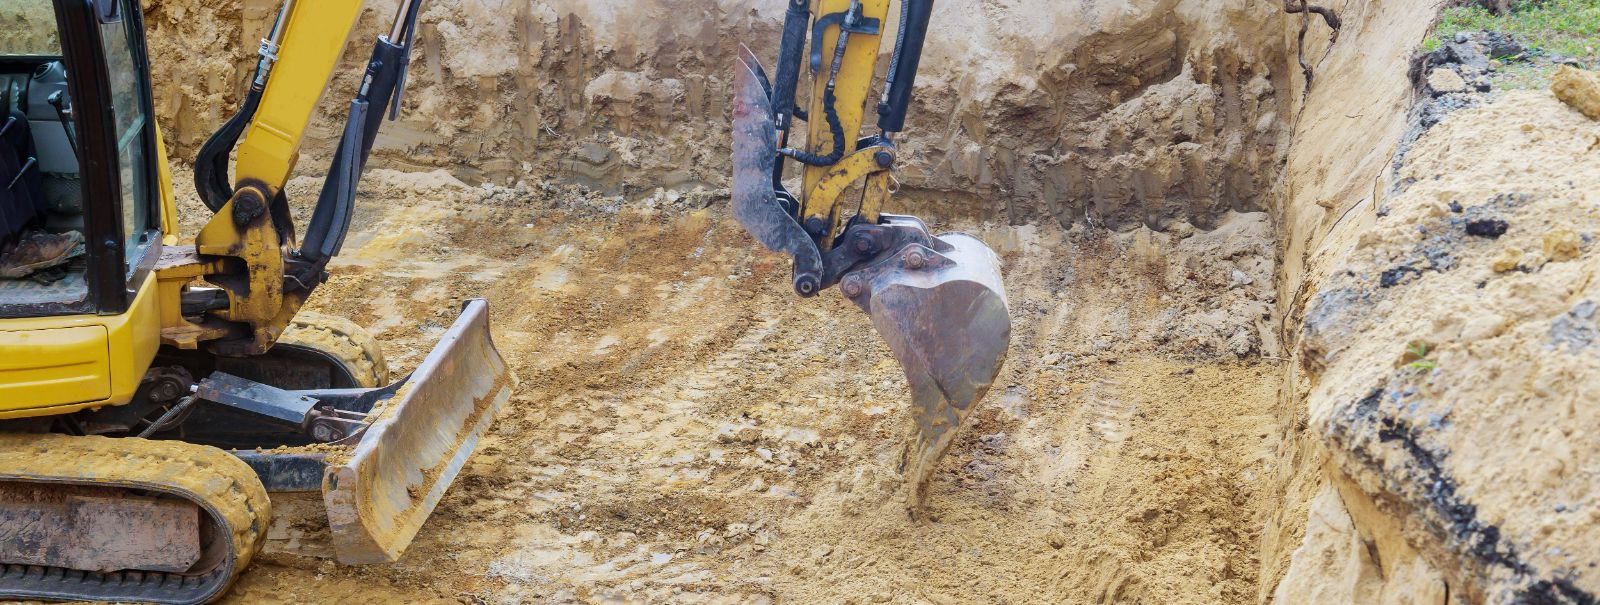 Kraavide kaevamine võib tunduda lihtsa ülesandena, kuid tegelikult on see oluline protsess, mis nõuab hoolikat planeerimist ja tähelepanu detailidele. Kraavidel